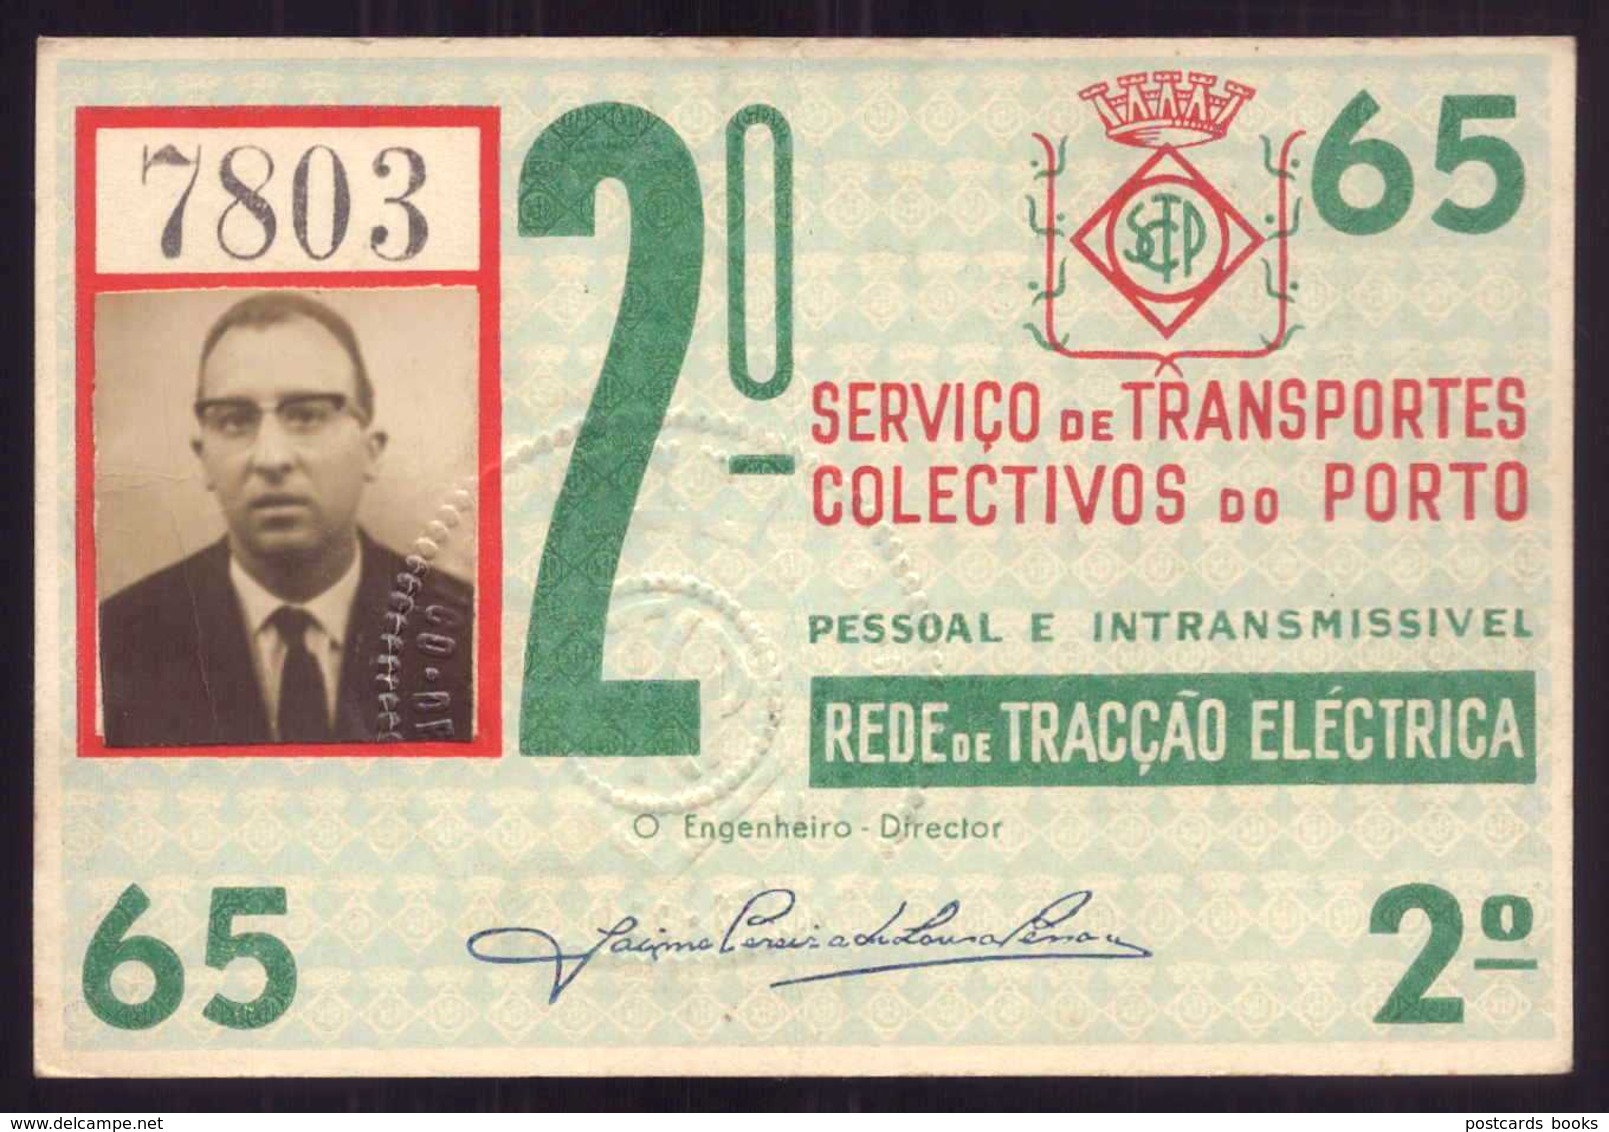 1965 Passe STCP Serviço De Transportes Colectivos Do PORTO Rede Tracção Electrica. Pass Ticket TRAM Portugal 1965 - Europe